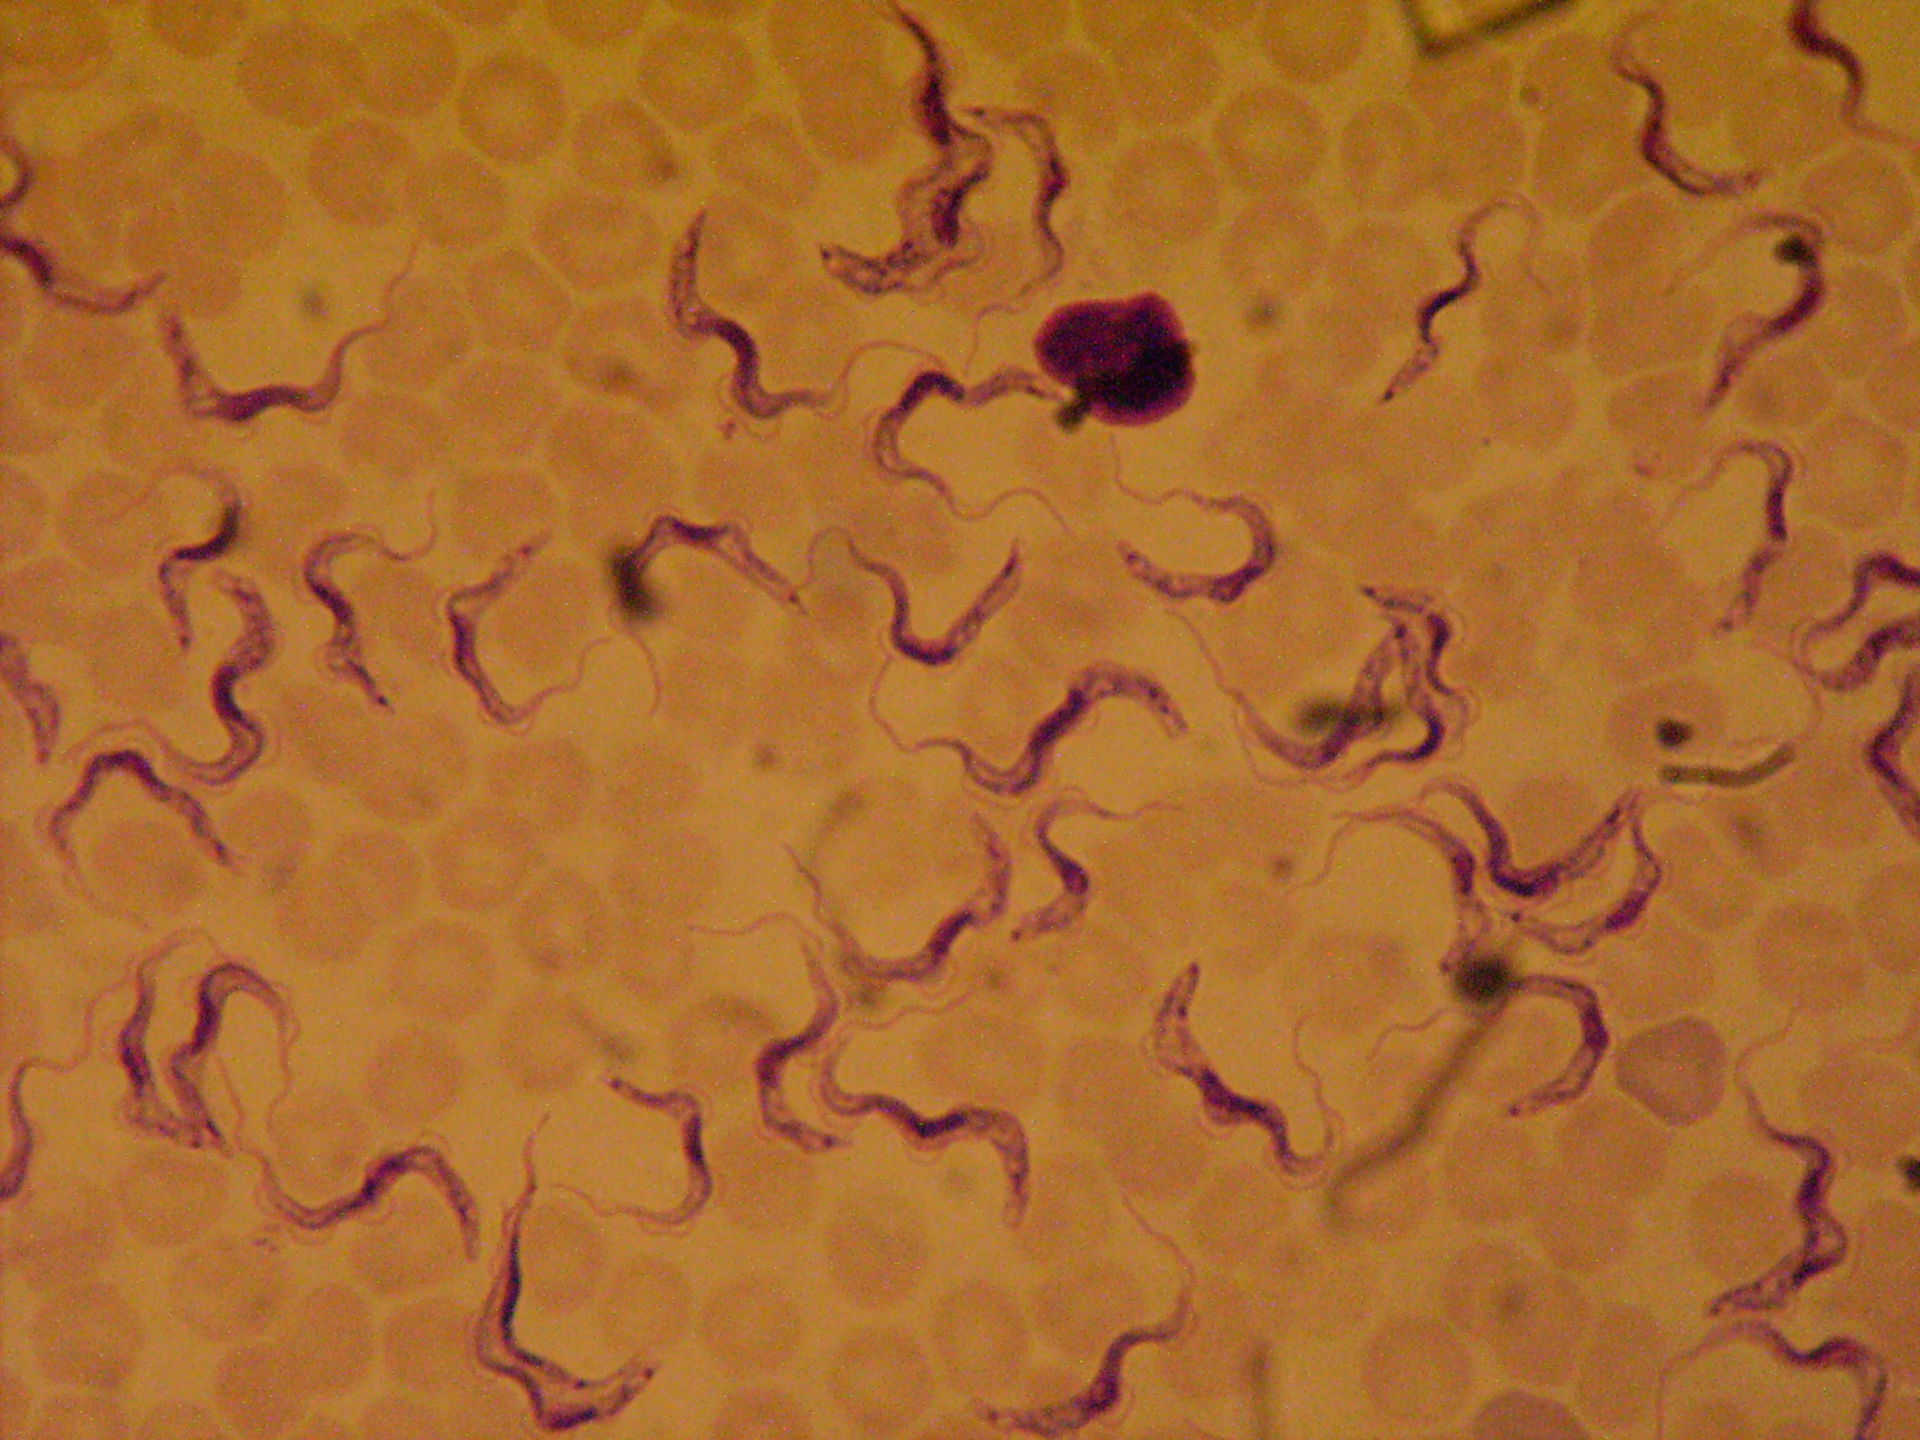 Trypanosoma species